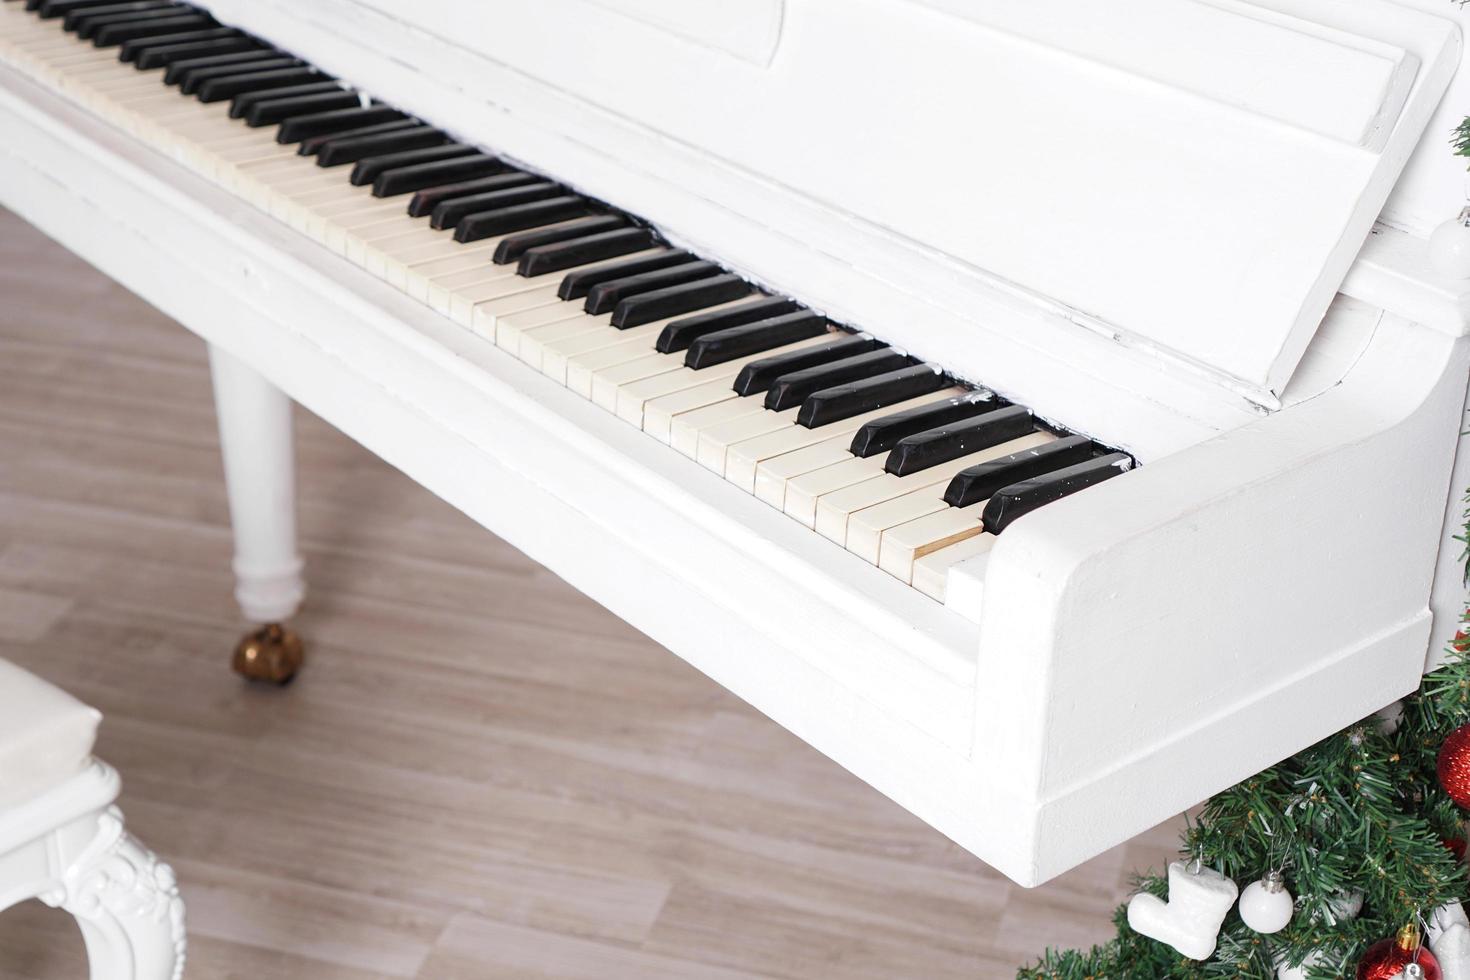 teclas em piano vertical branco com decoração de natal foto